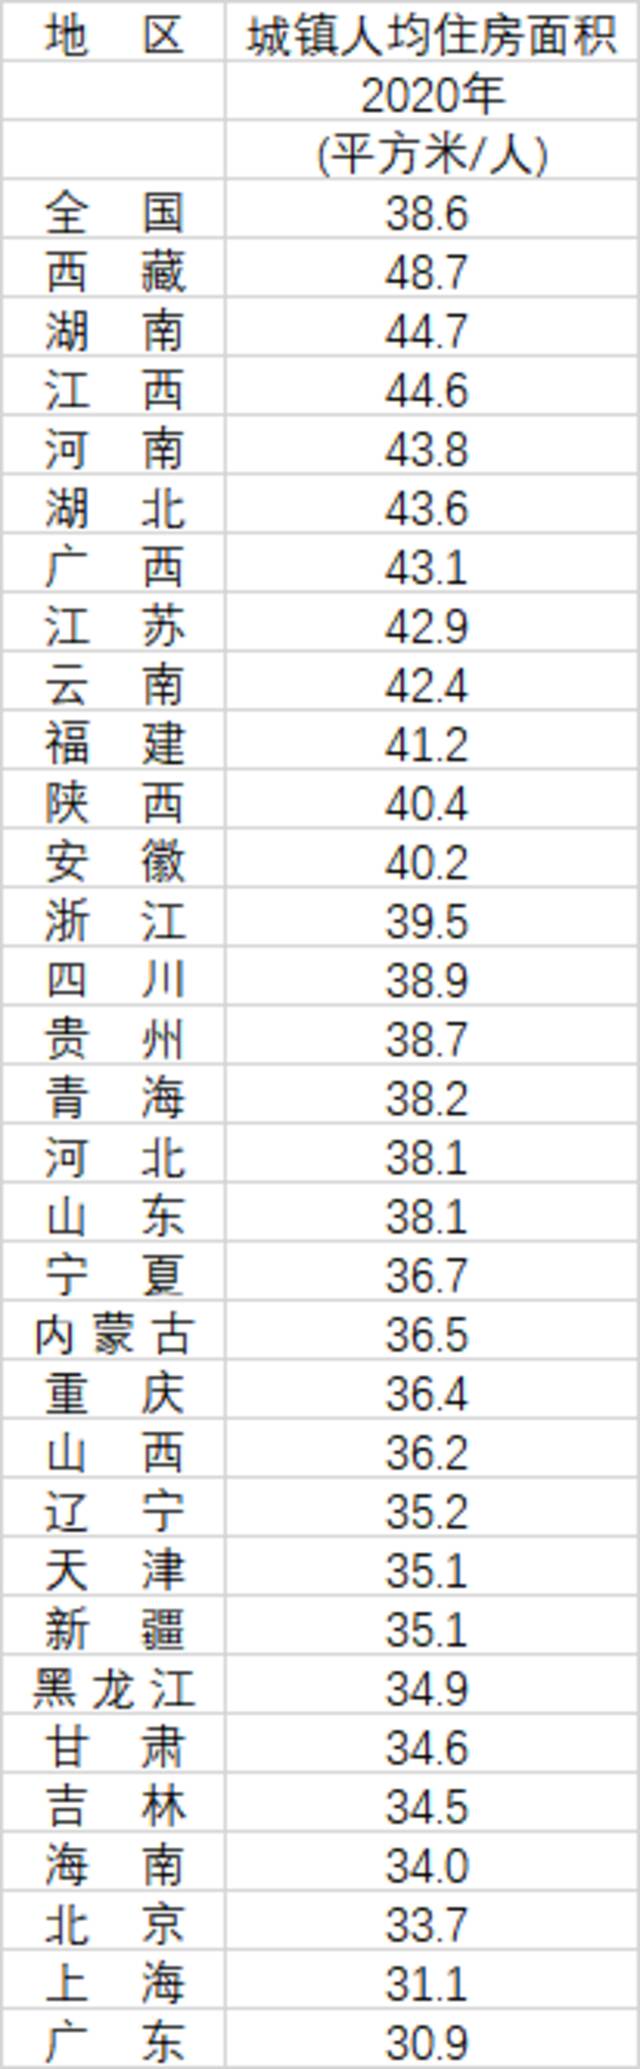 （数据来源：第一财经记者根据《中国人口普查年鉴-2020》数据计算整理）